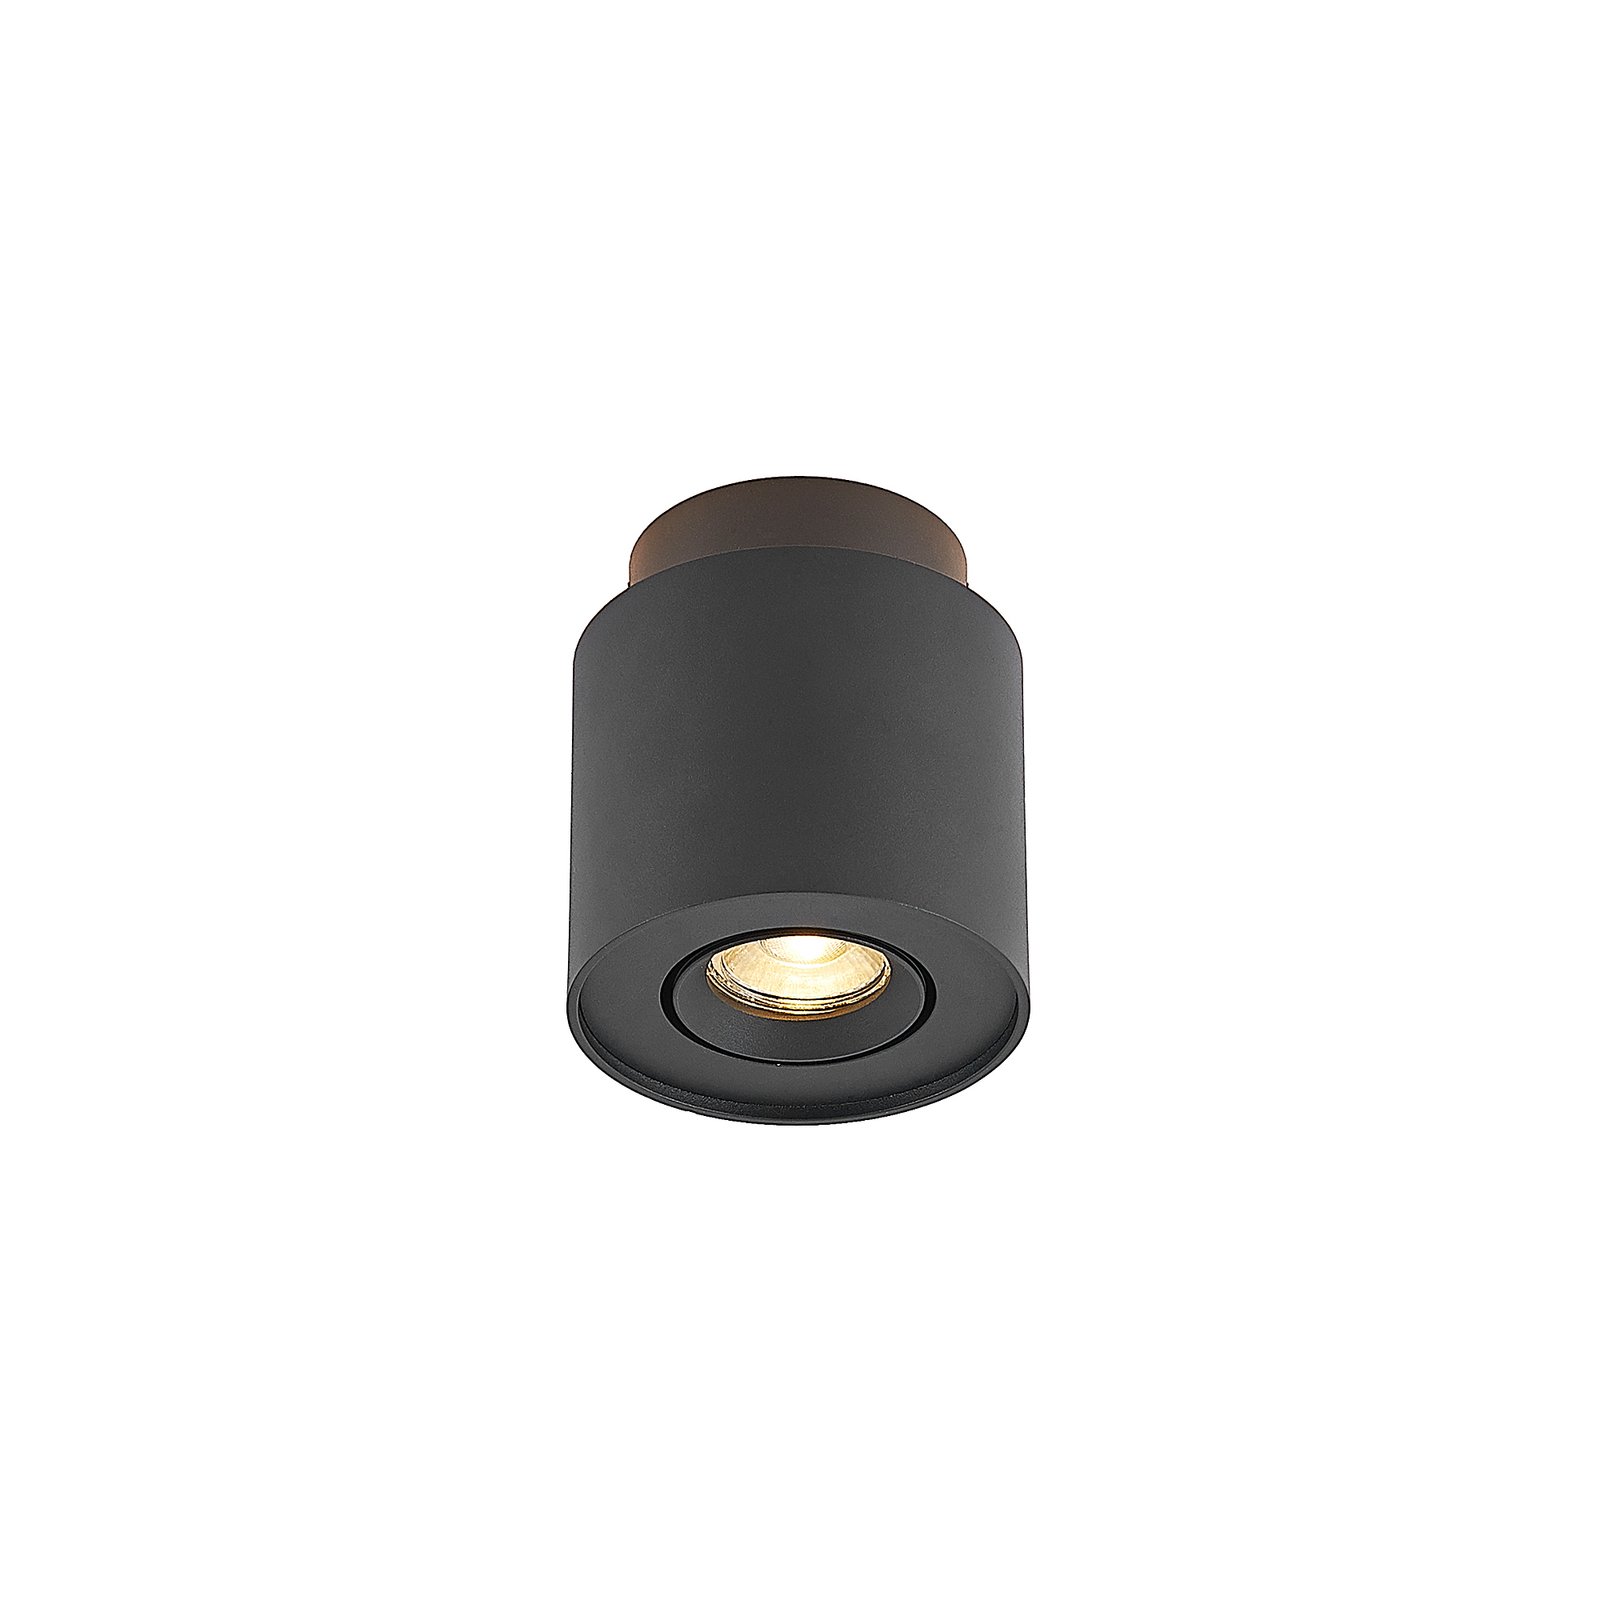 Arcchio Walisa ceiling lamp, Ø 10 cm, black, aluminium